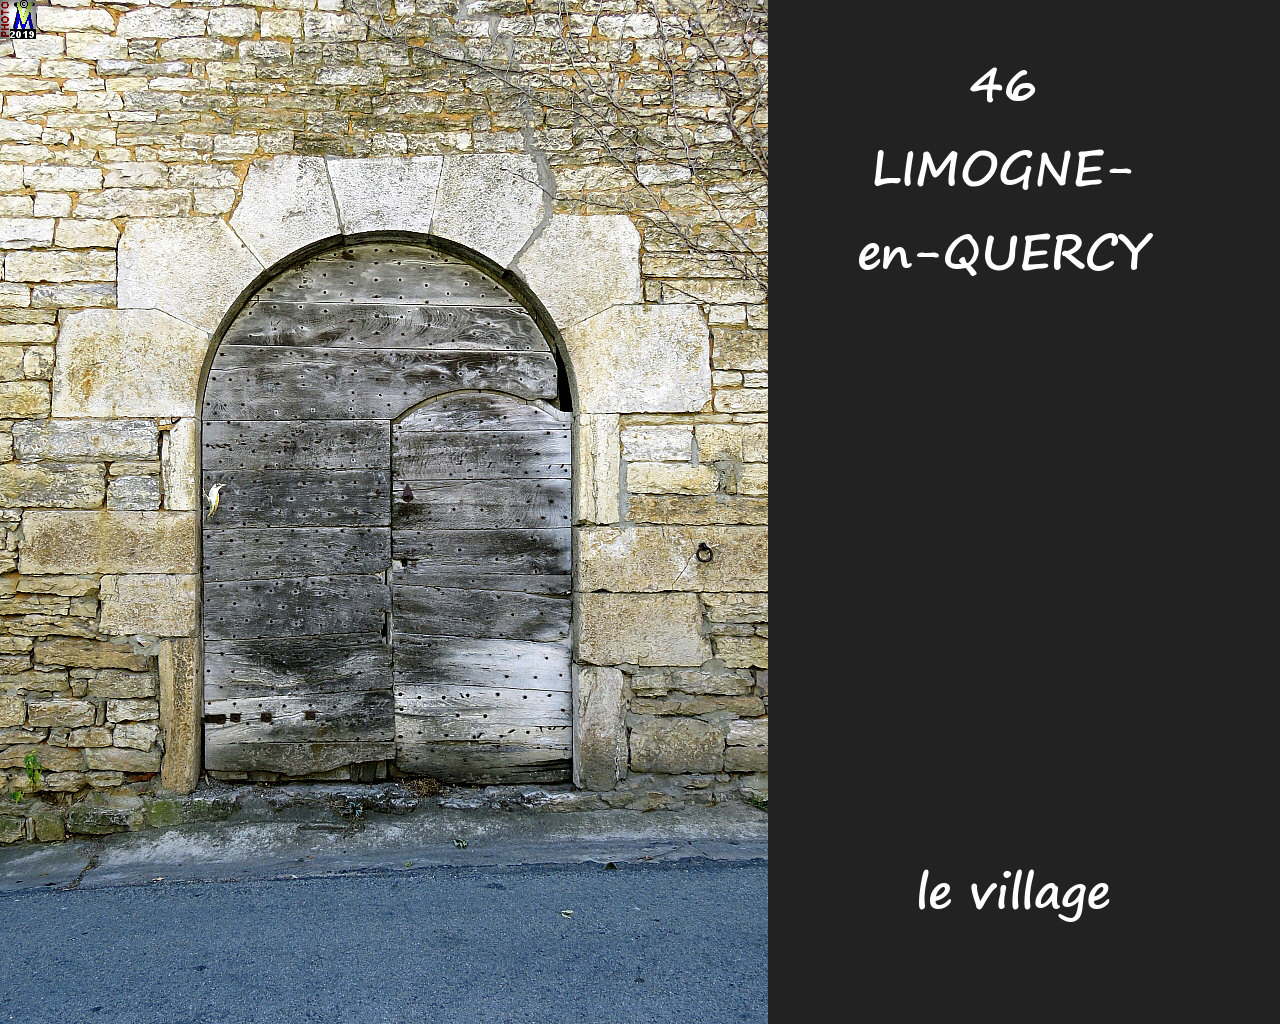 46LIMOGNE-QUERCY_village_104.jpg